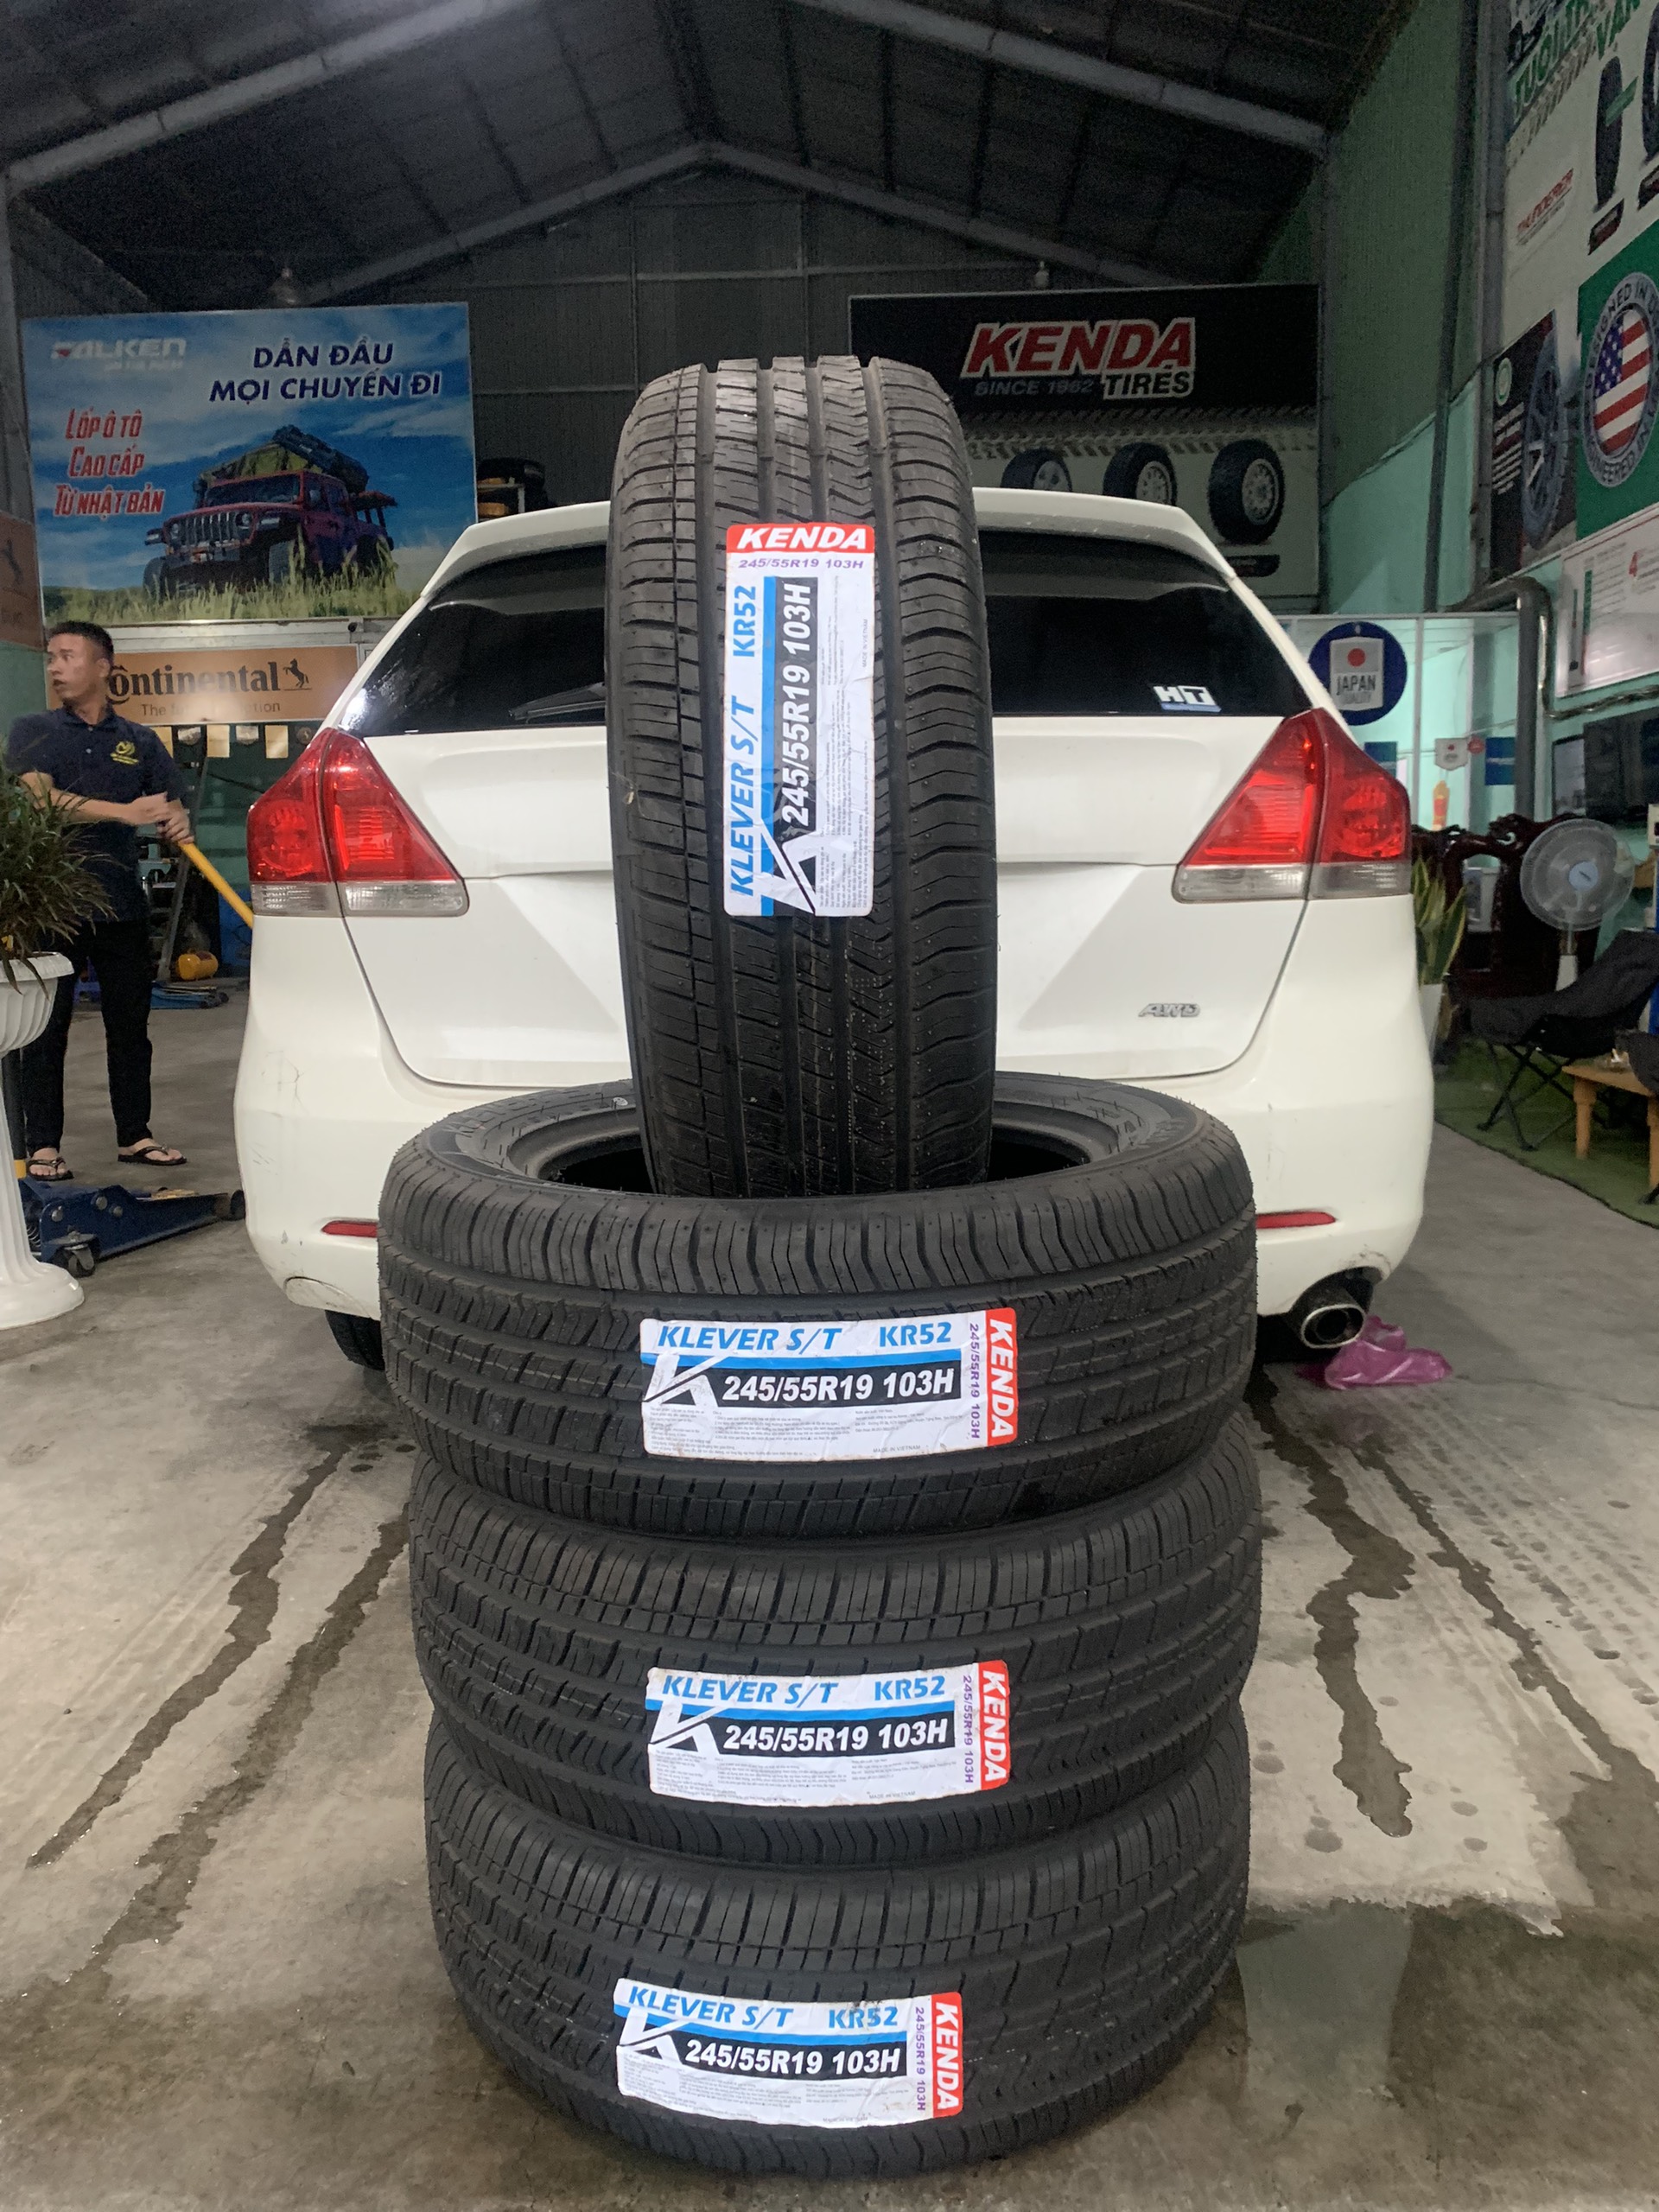 TƯ VẤN : Thay lốp xe Toyota Venza chính hãng ở Nhơn Trạch, Đồng Nai.